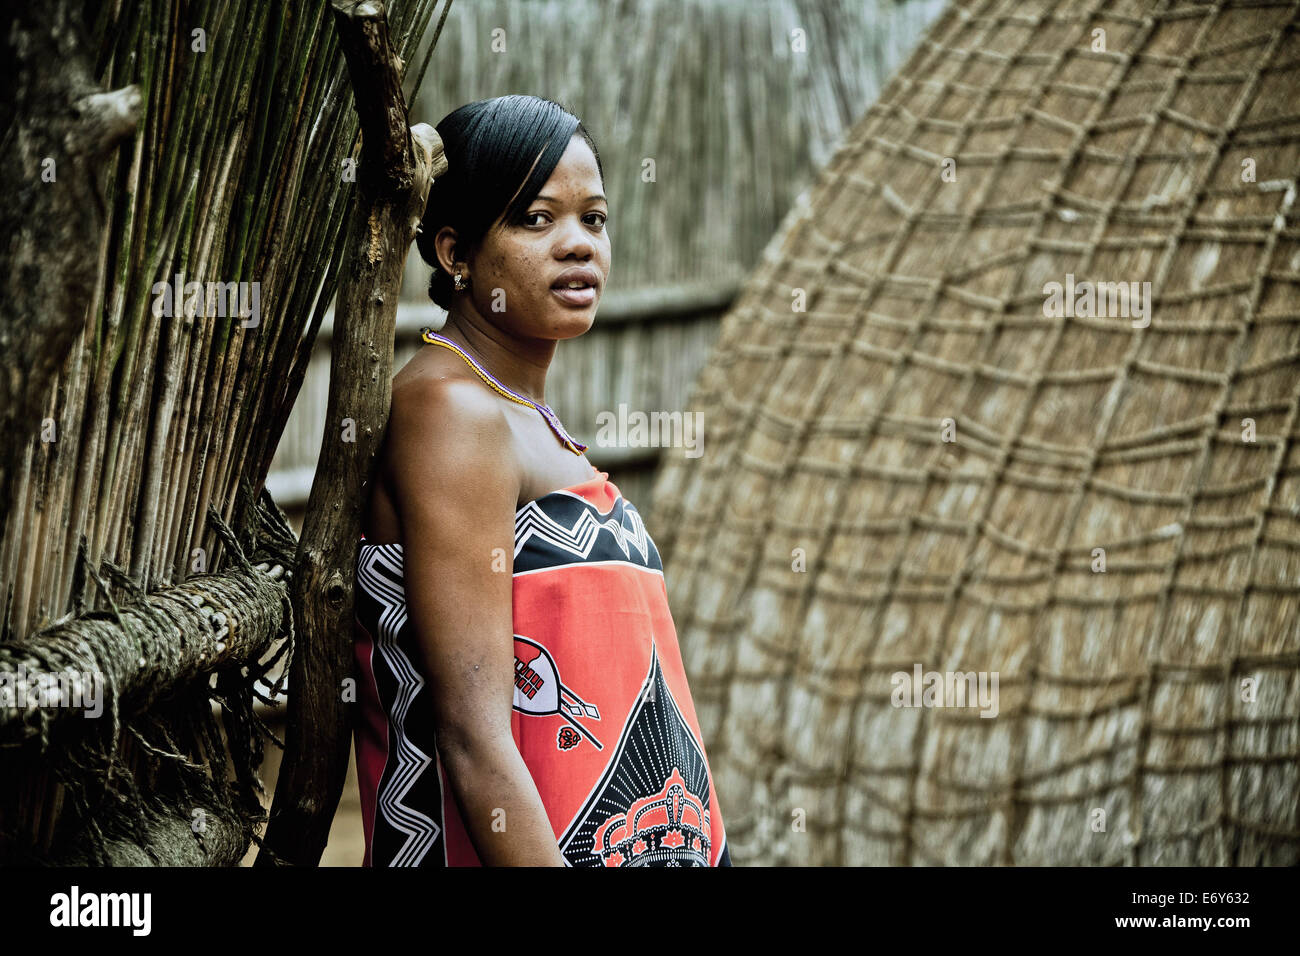 Junge Frau des Stammes Swazi in einem traditionellen Dorf Swazi, Swasiland, Afrika Stockfoto